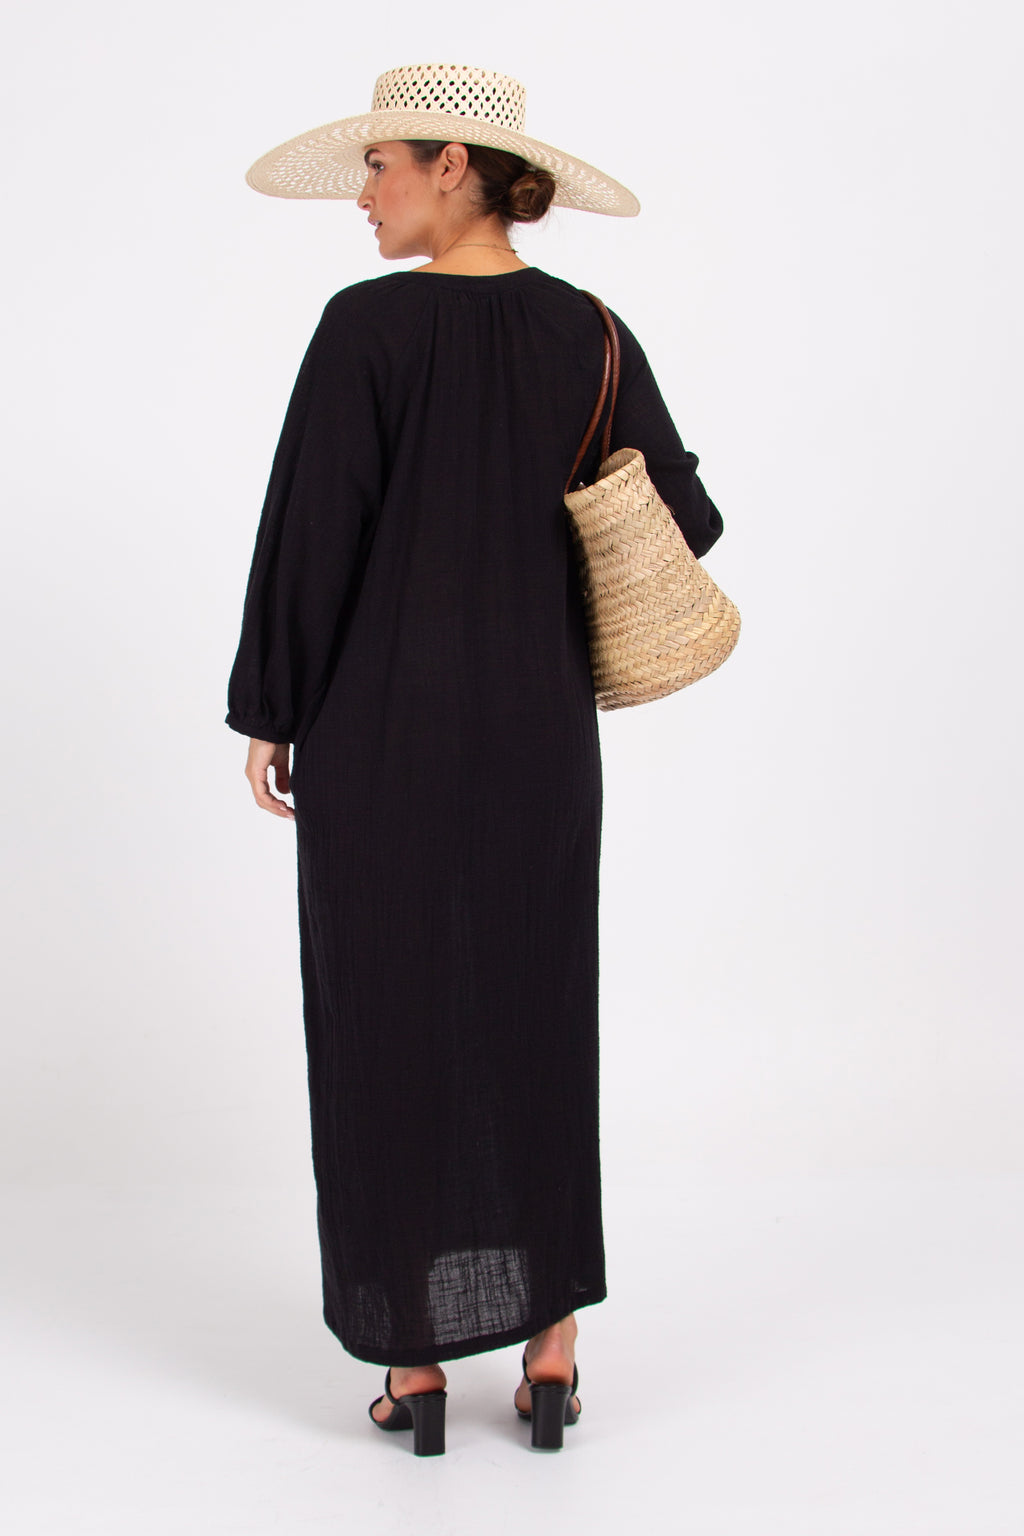 Claudette lange zwarte jurk